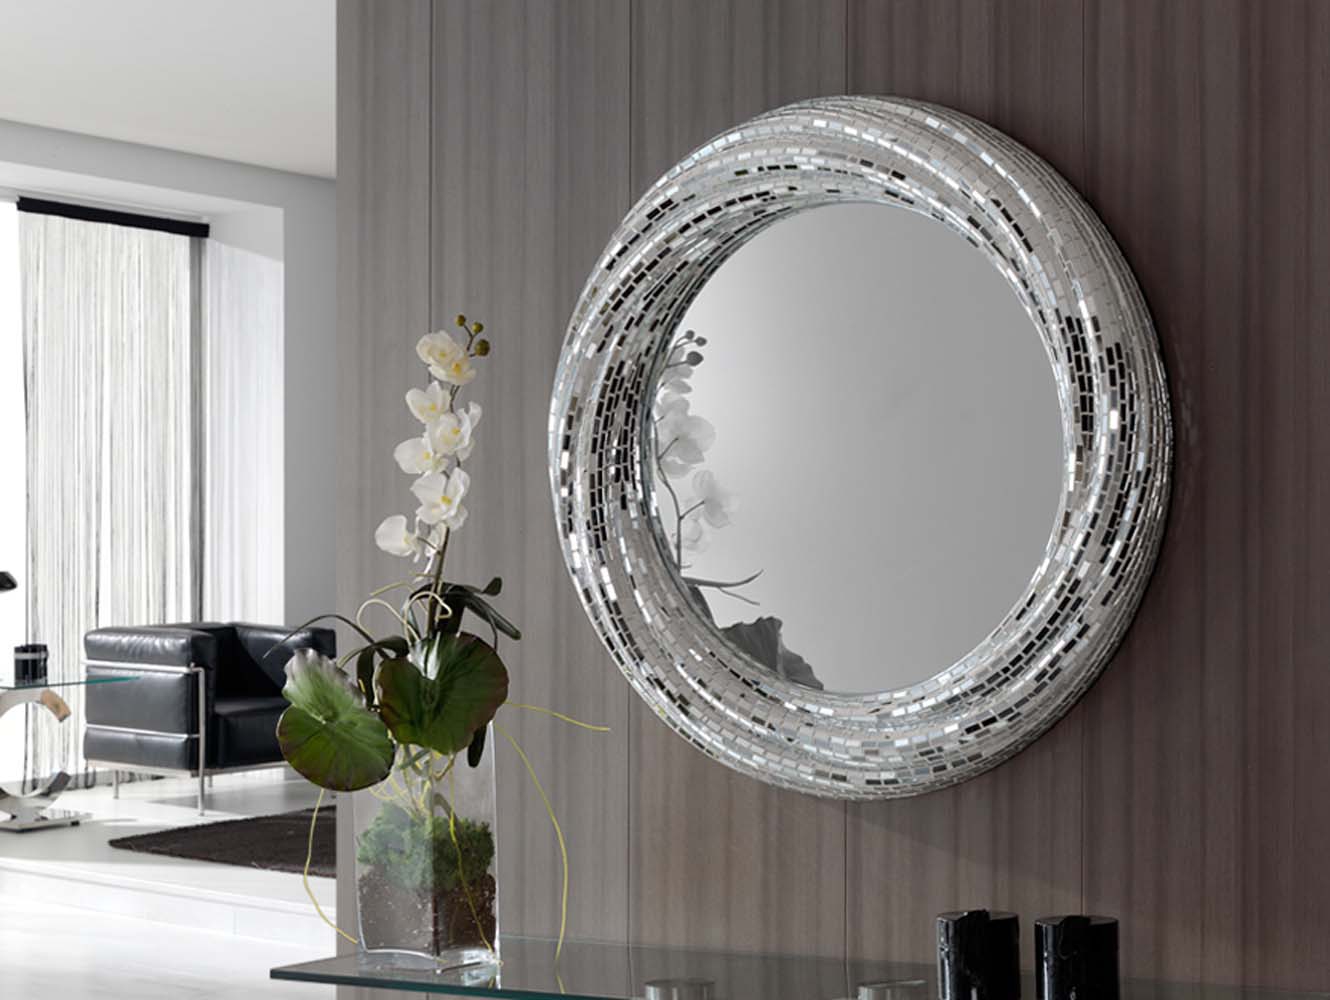 На столе лежит зеркало как изменится изображение люстры в этом зеркале если закрыть половину зеркала